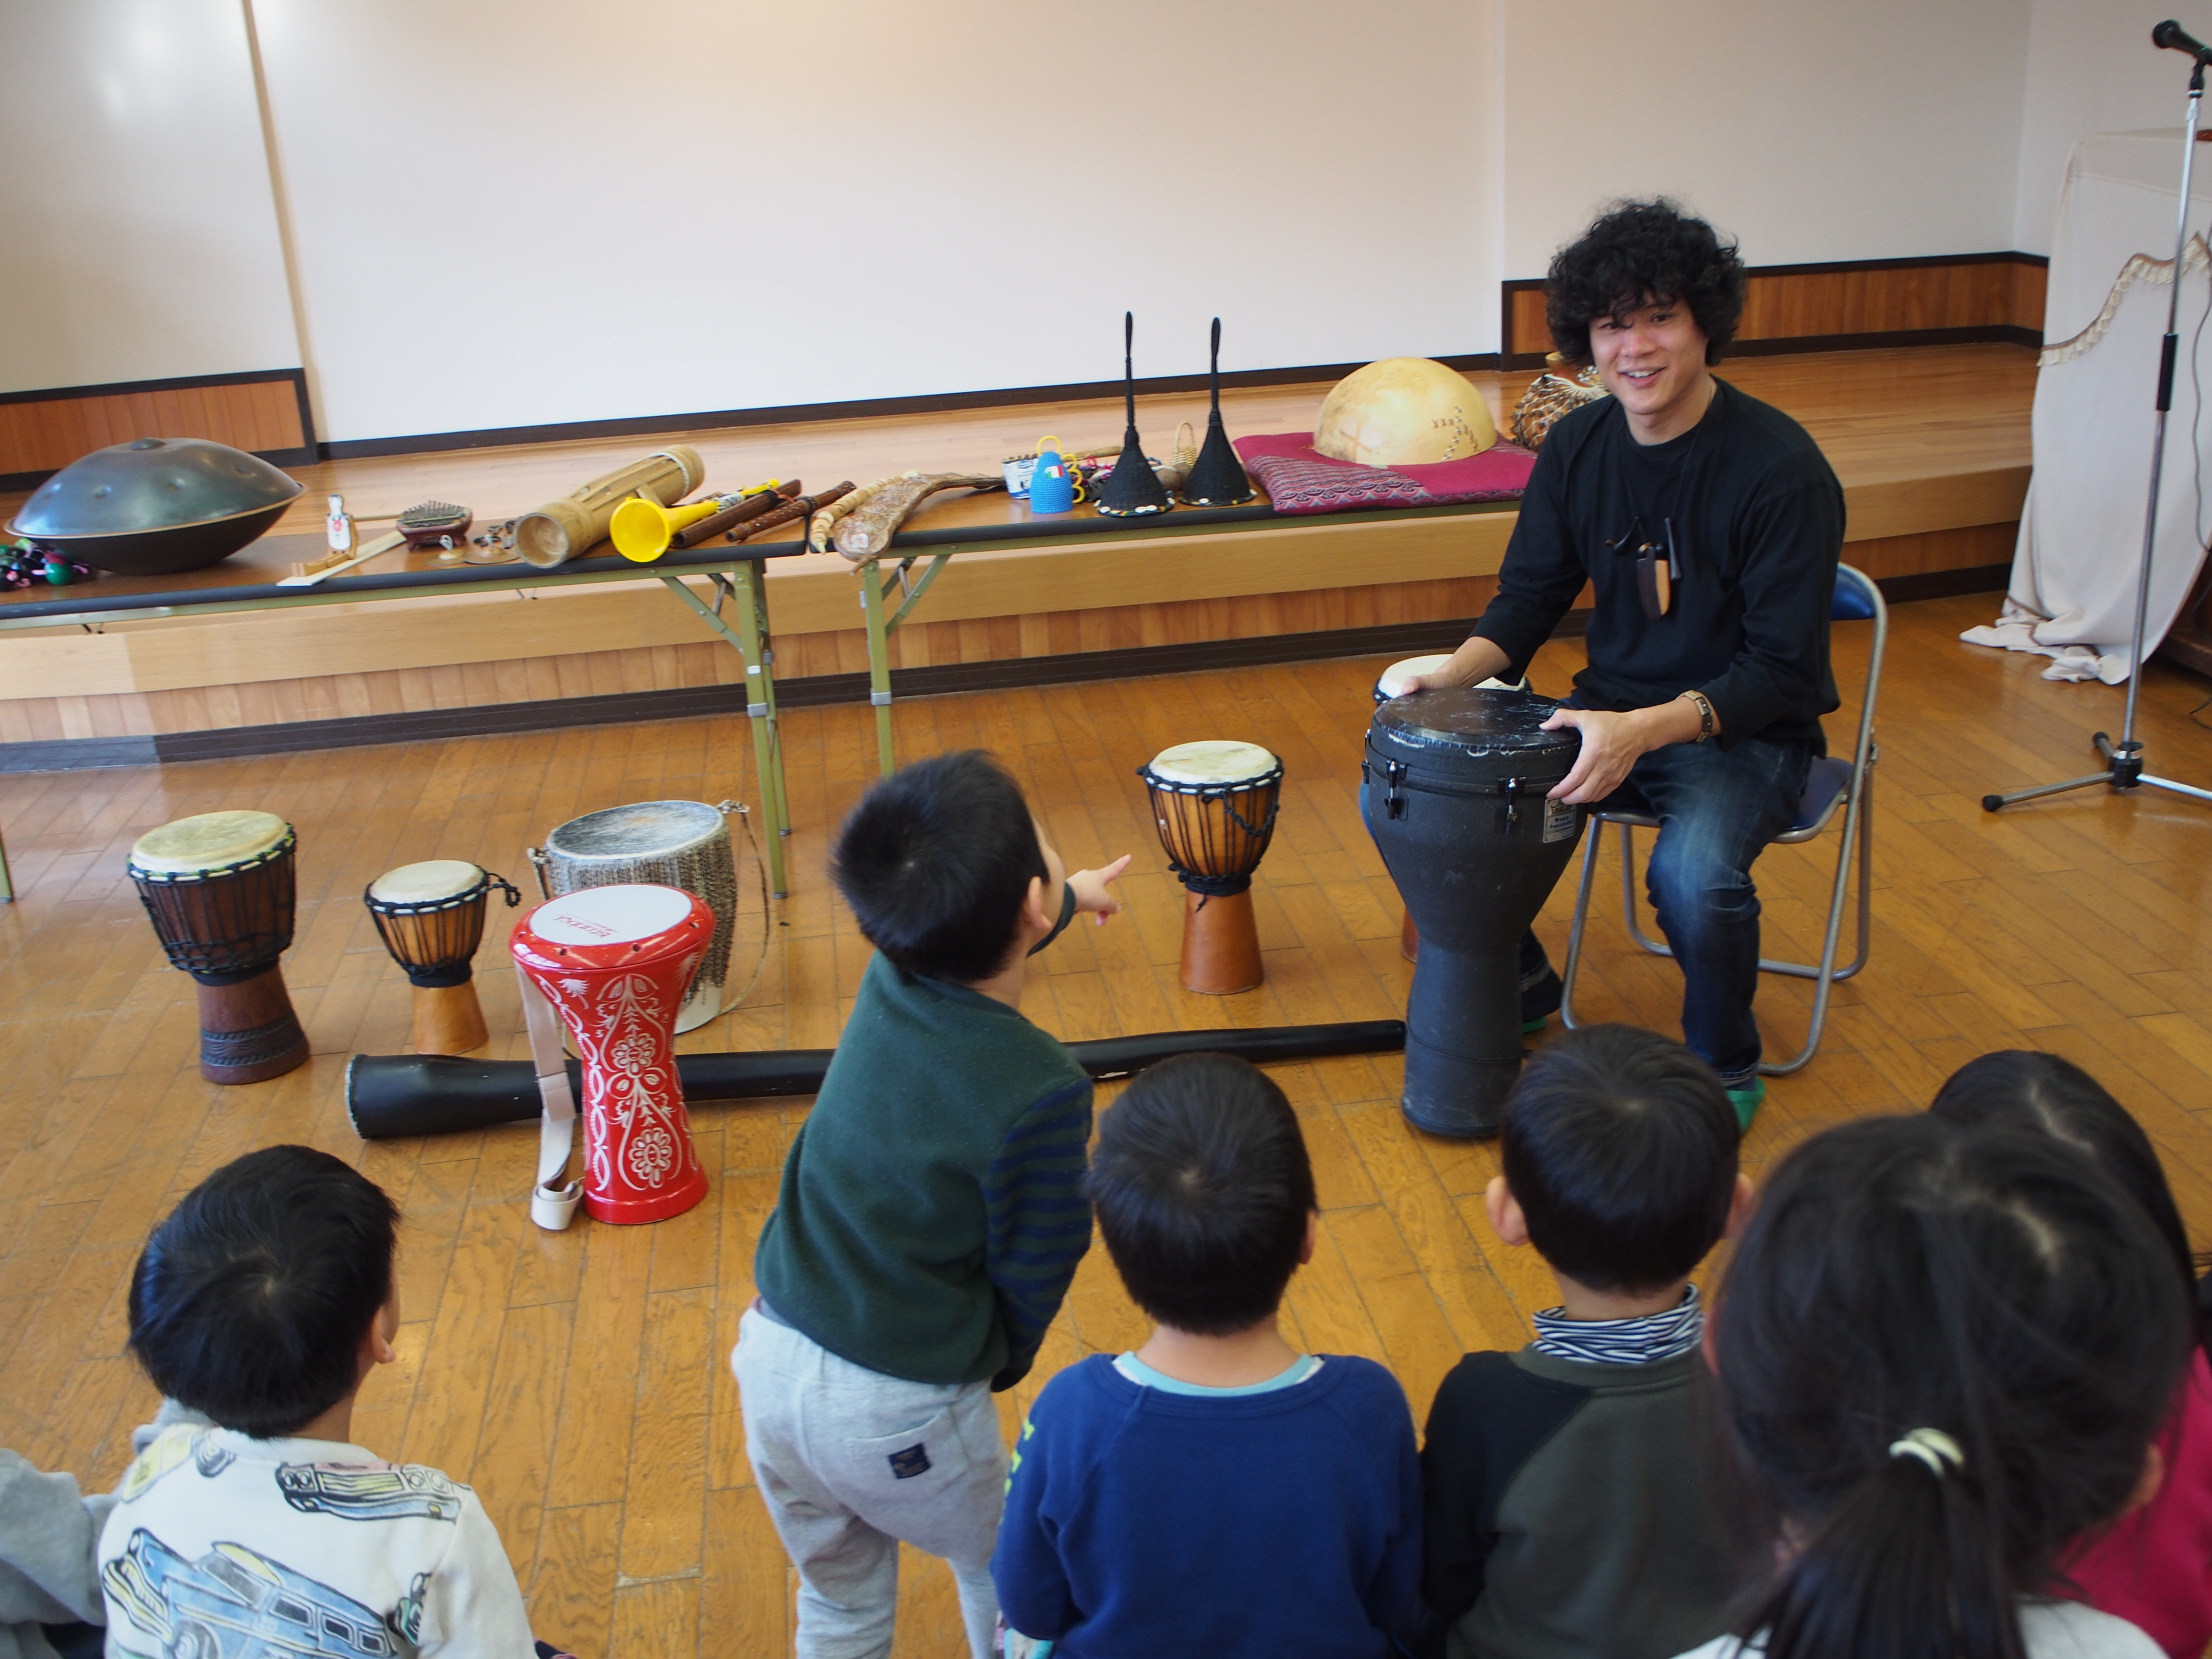 田辺さんの演奏に歓声をあげながら、世界各国の楽器の音を楽しむことができました。